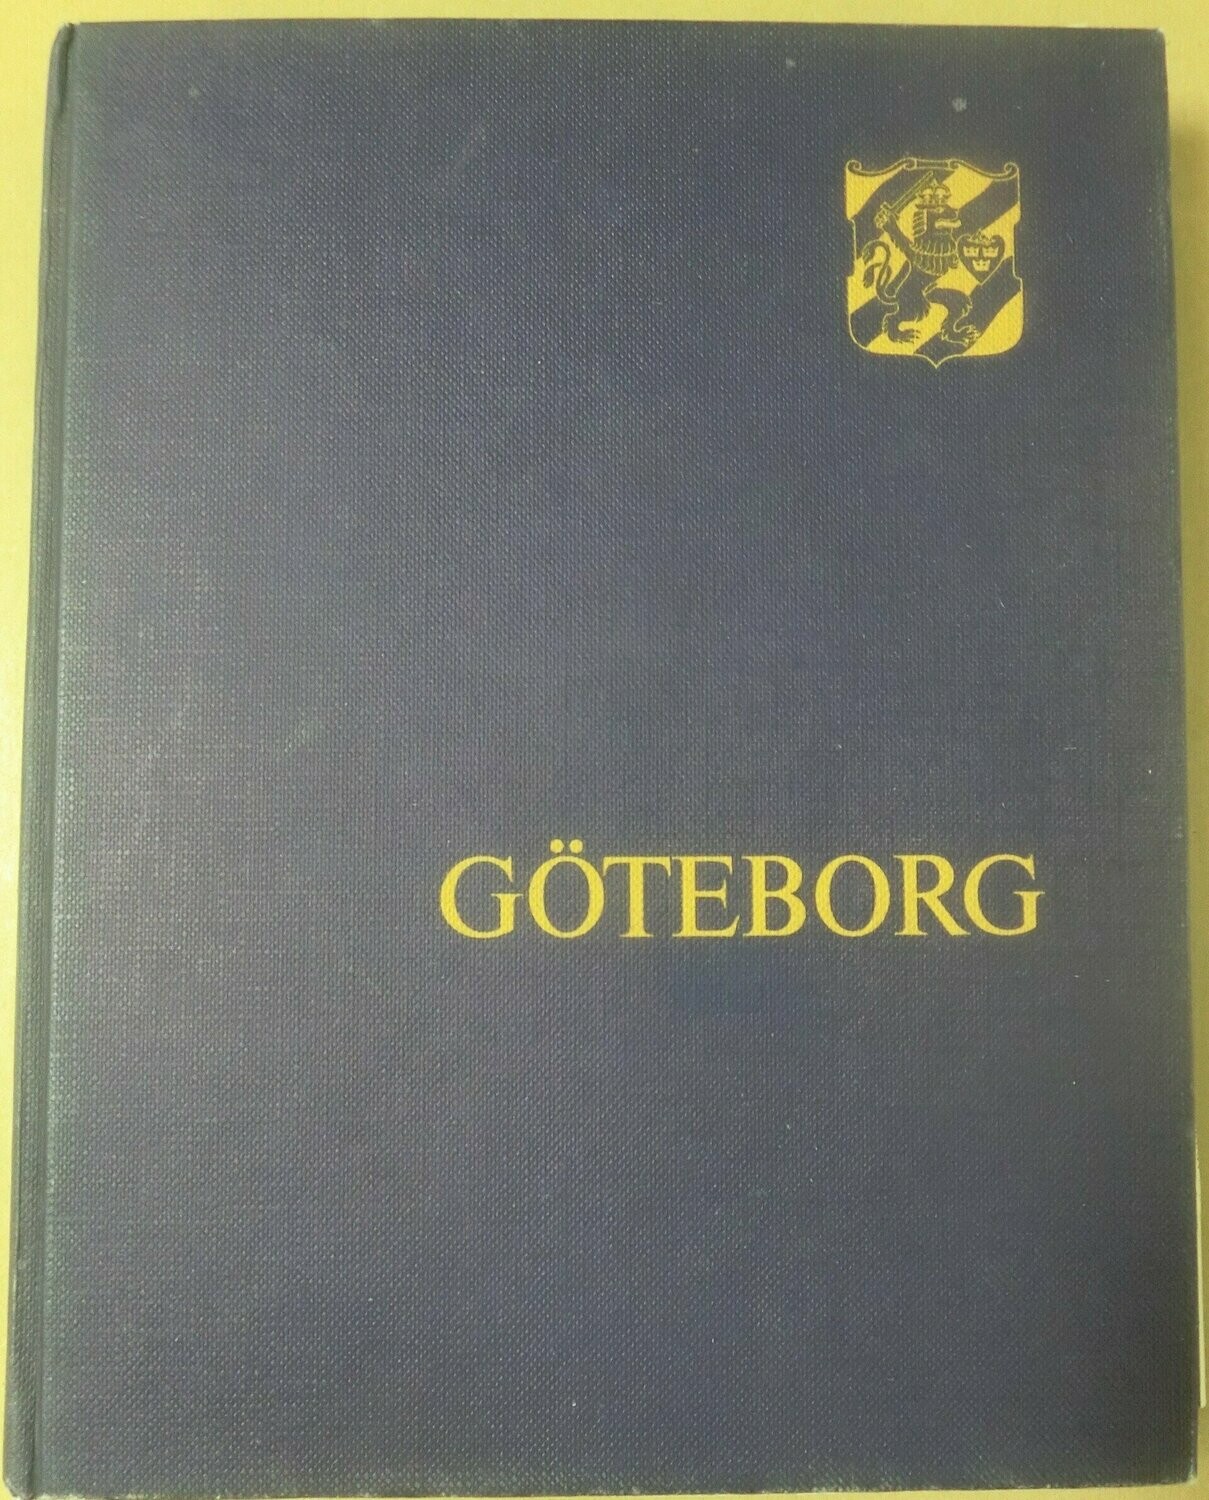 STF årsskrift 1978 - Göteborg